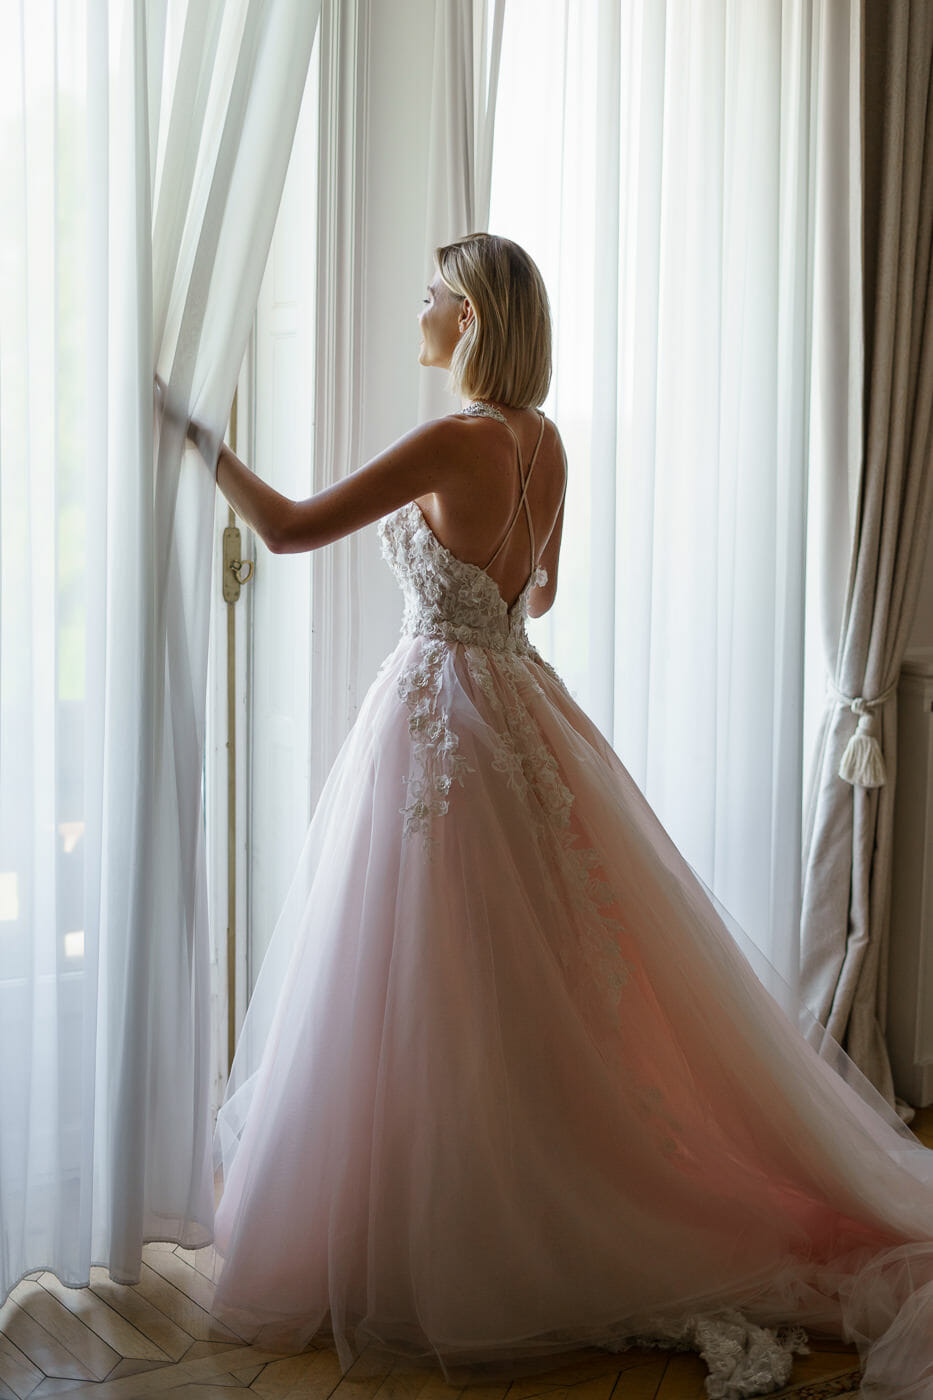 Bride looking into windows